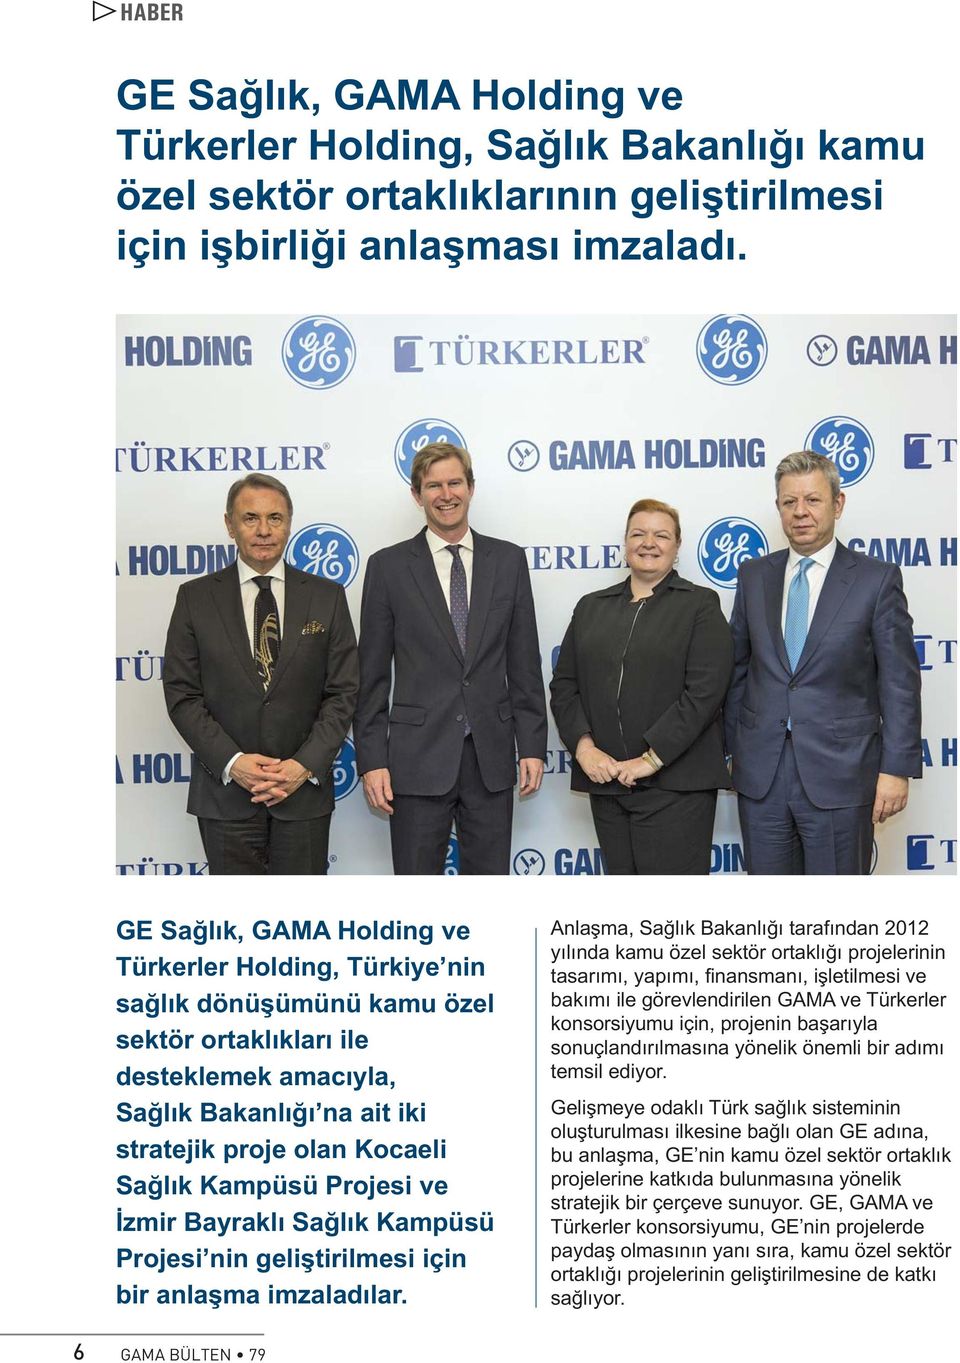 Kampüsü Projesi ve İzmir Bayraklı Sağlık Kampüsü Projesi nin geliştirilmesi için bir anlaşma imzaladılar.